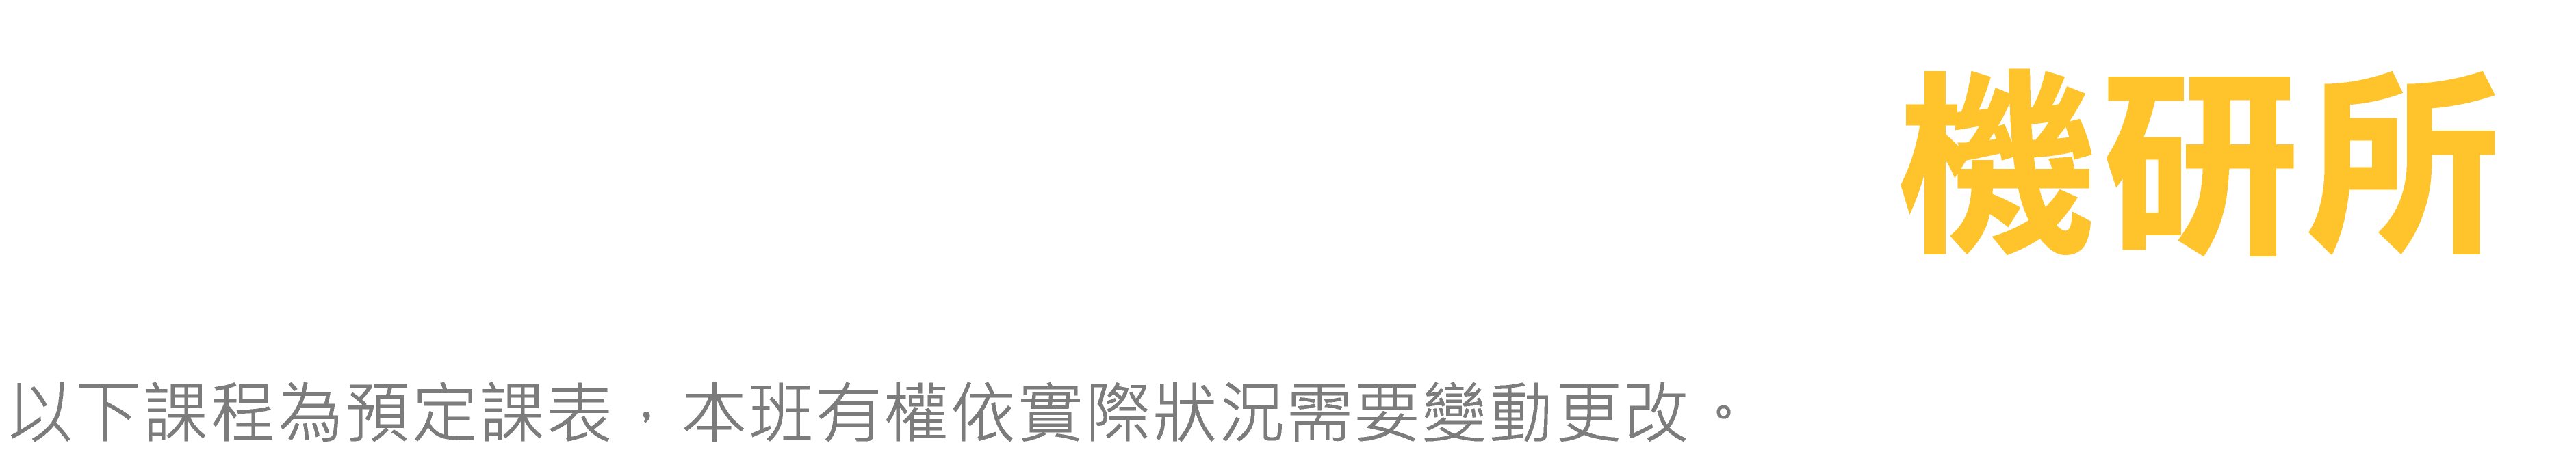 台北偉文 機研所 預定課表